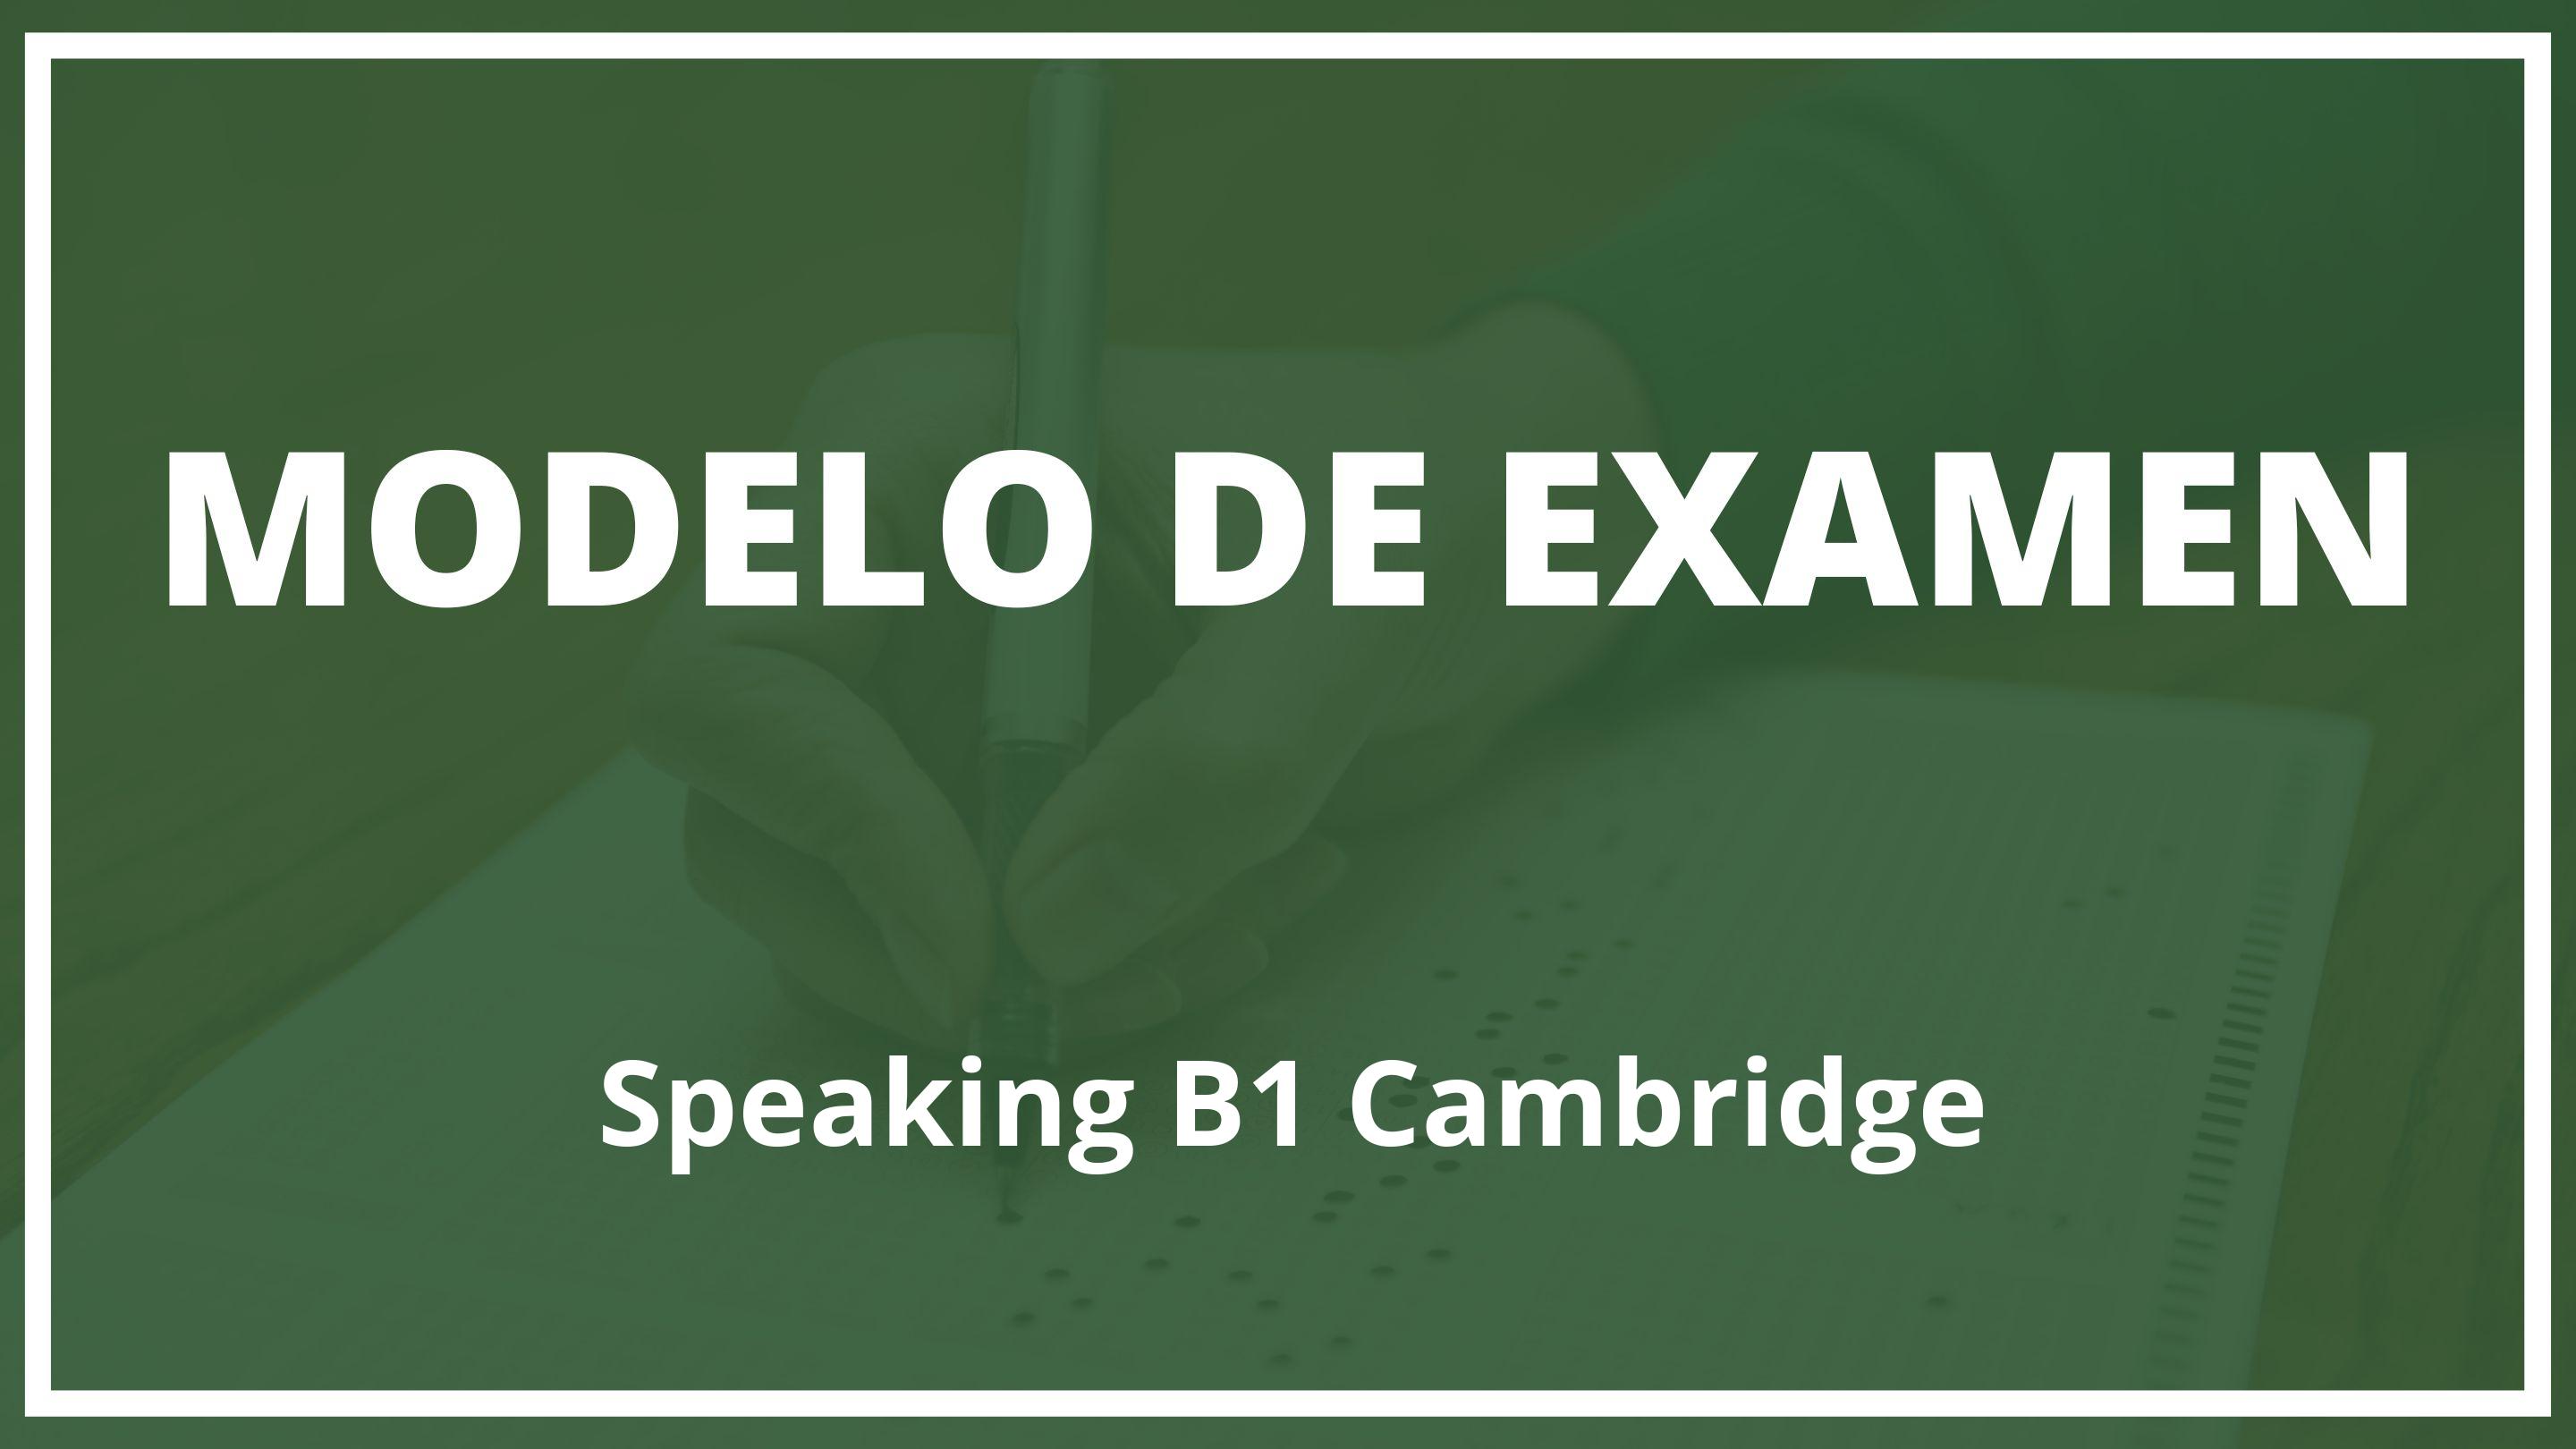 Examen Speaking B1 Cambridge